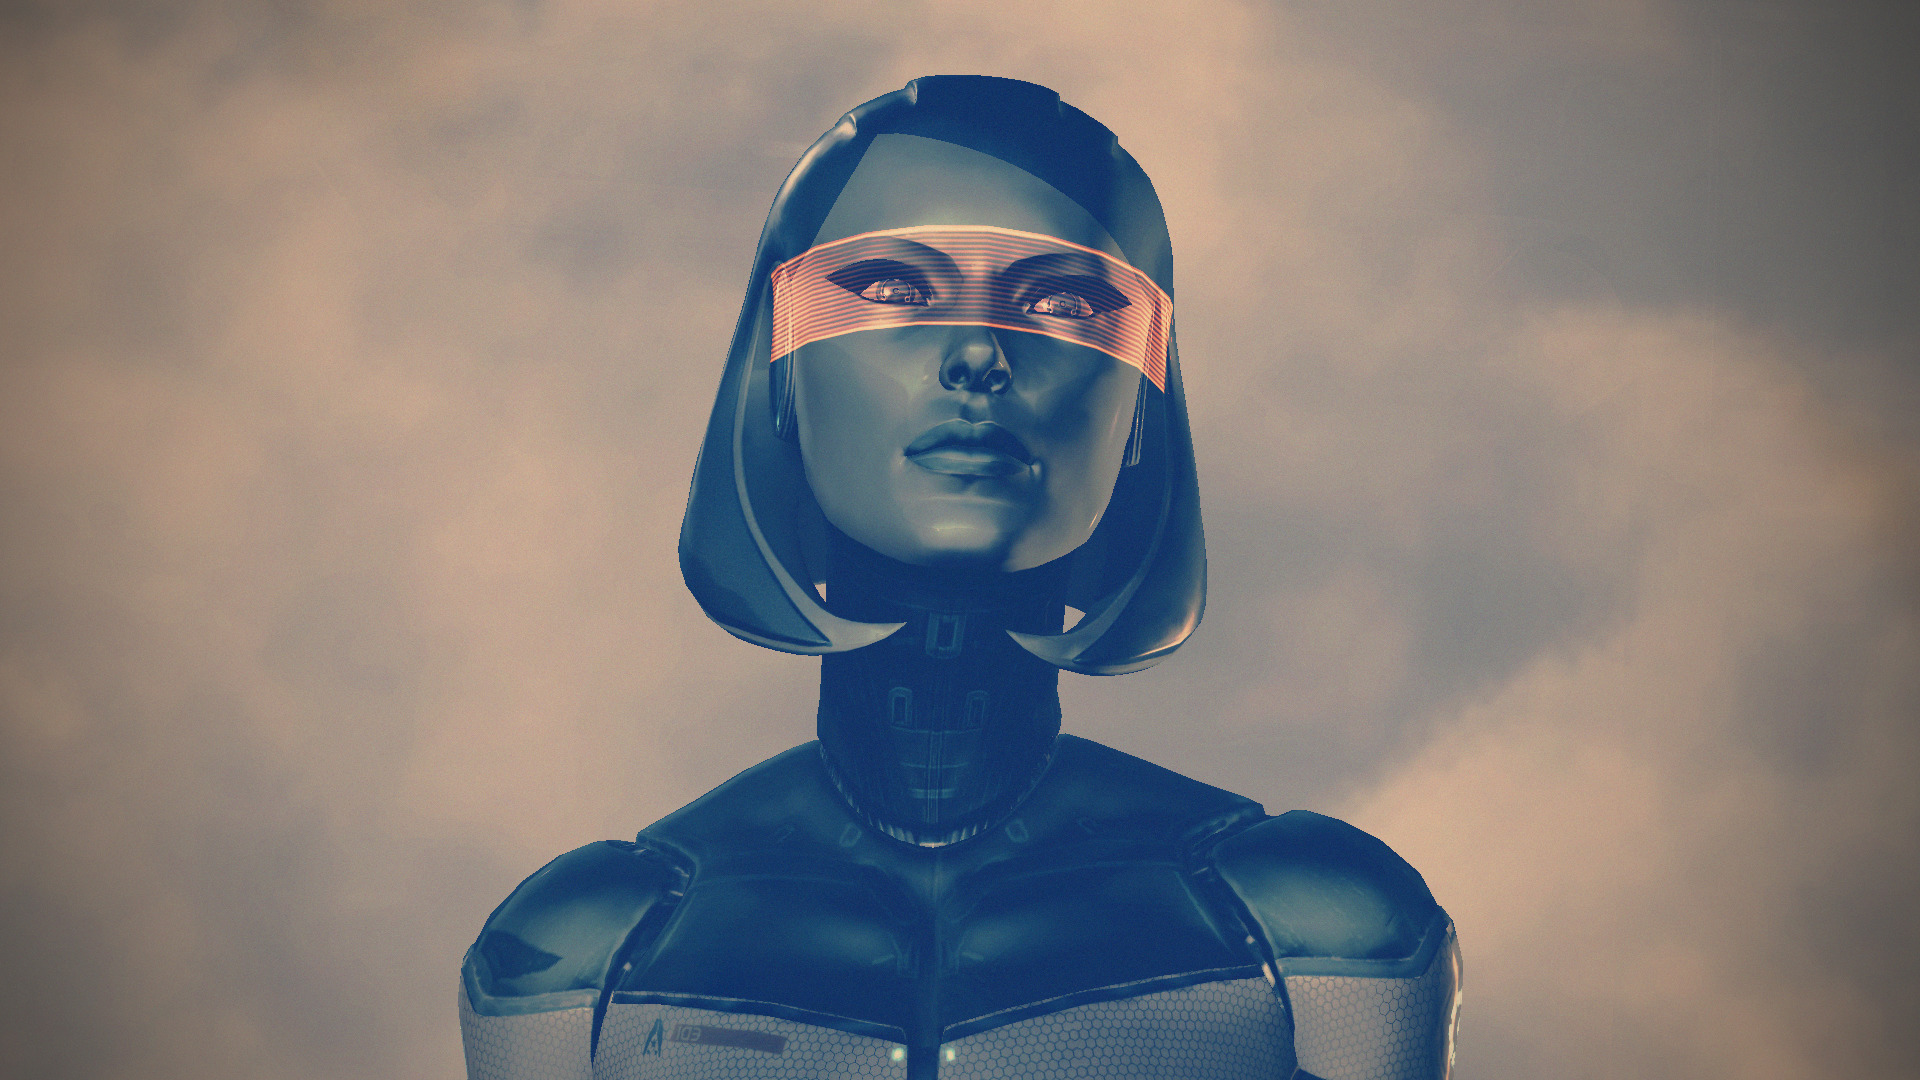 EDI, Artificial Intelligence, Mass Effect 3 Wallpaper